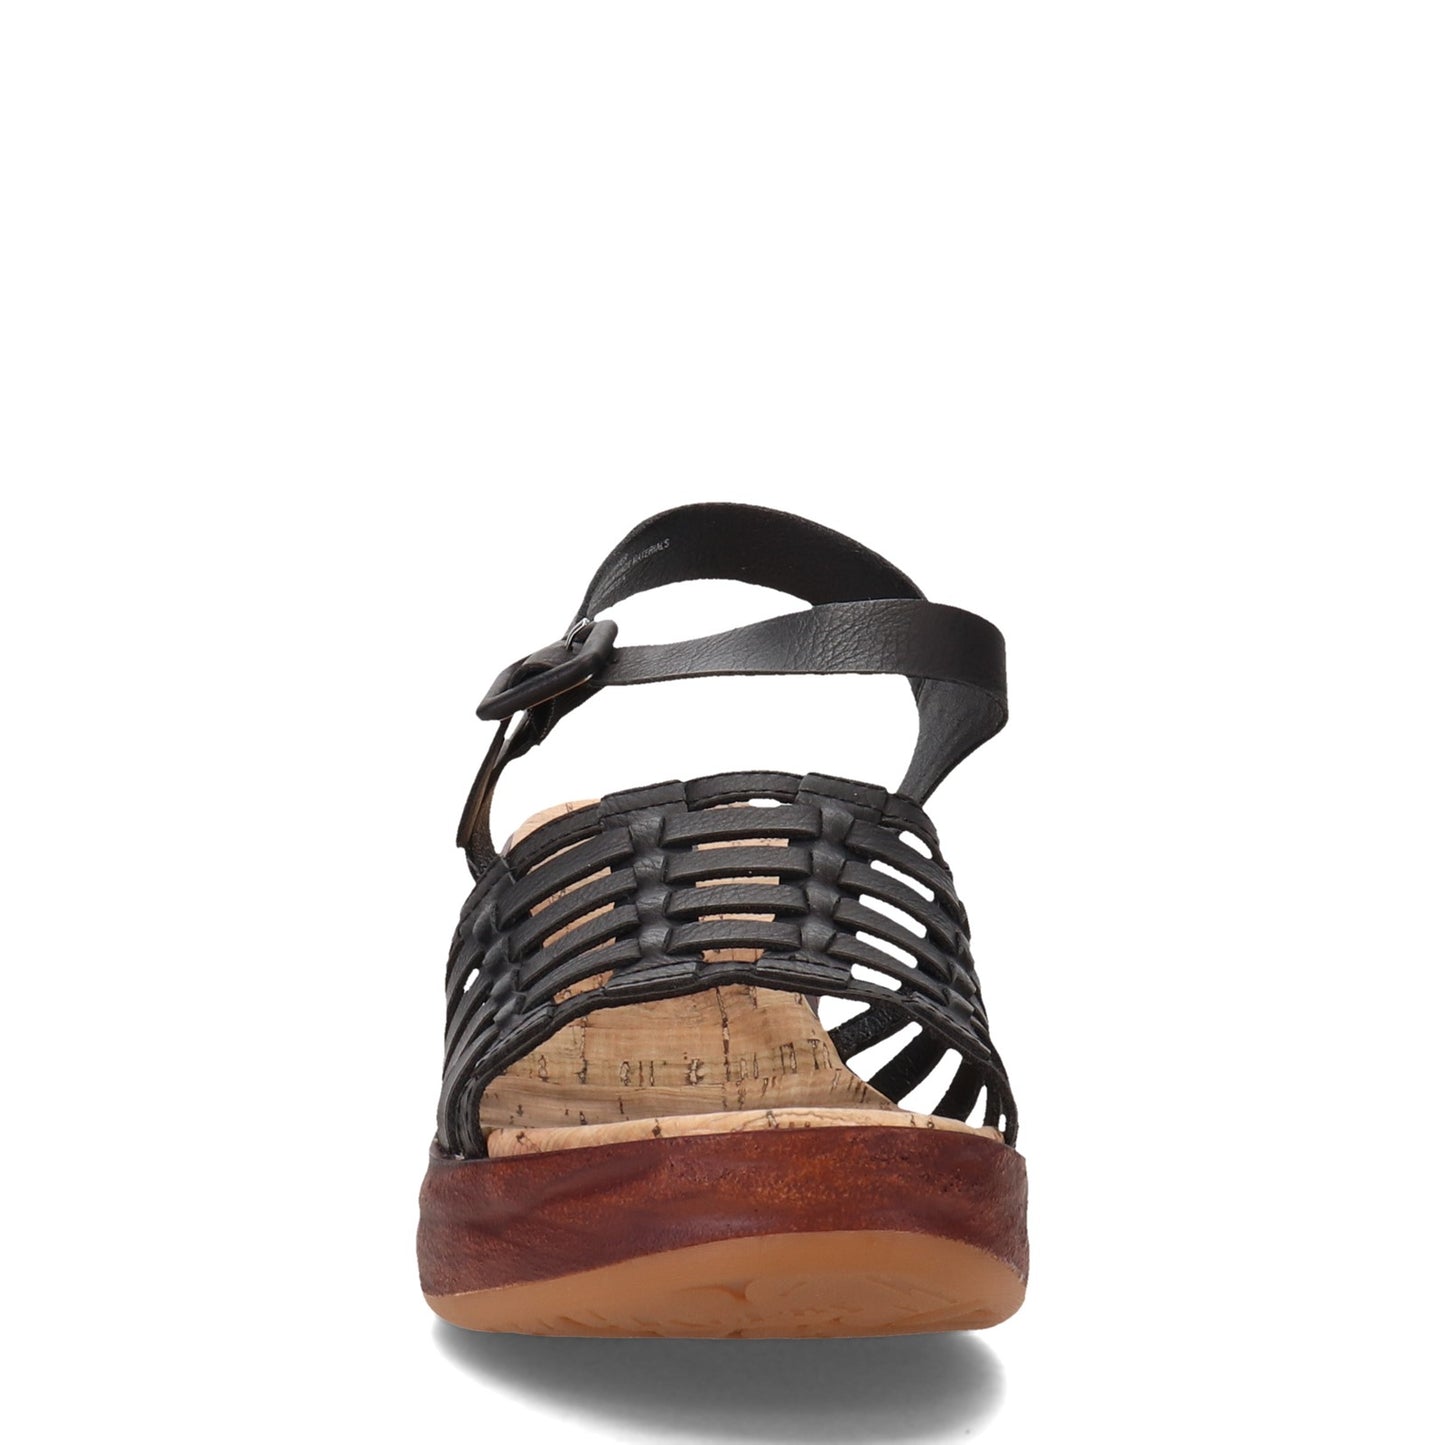 Peltz Shoes  Women's KORKS Marley Sandal Black KR0011409